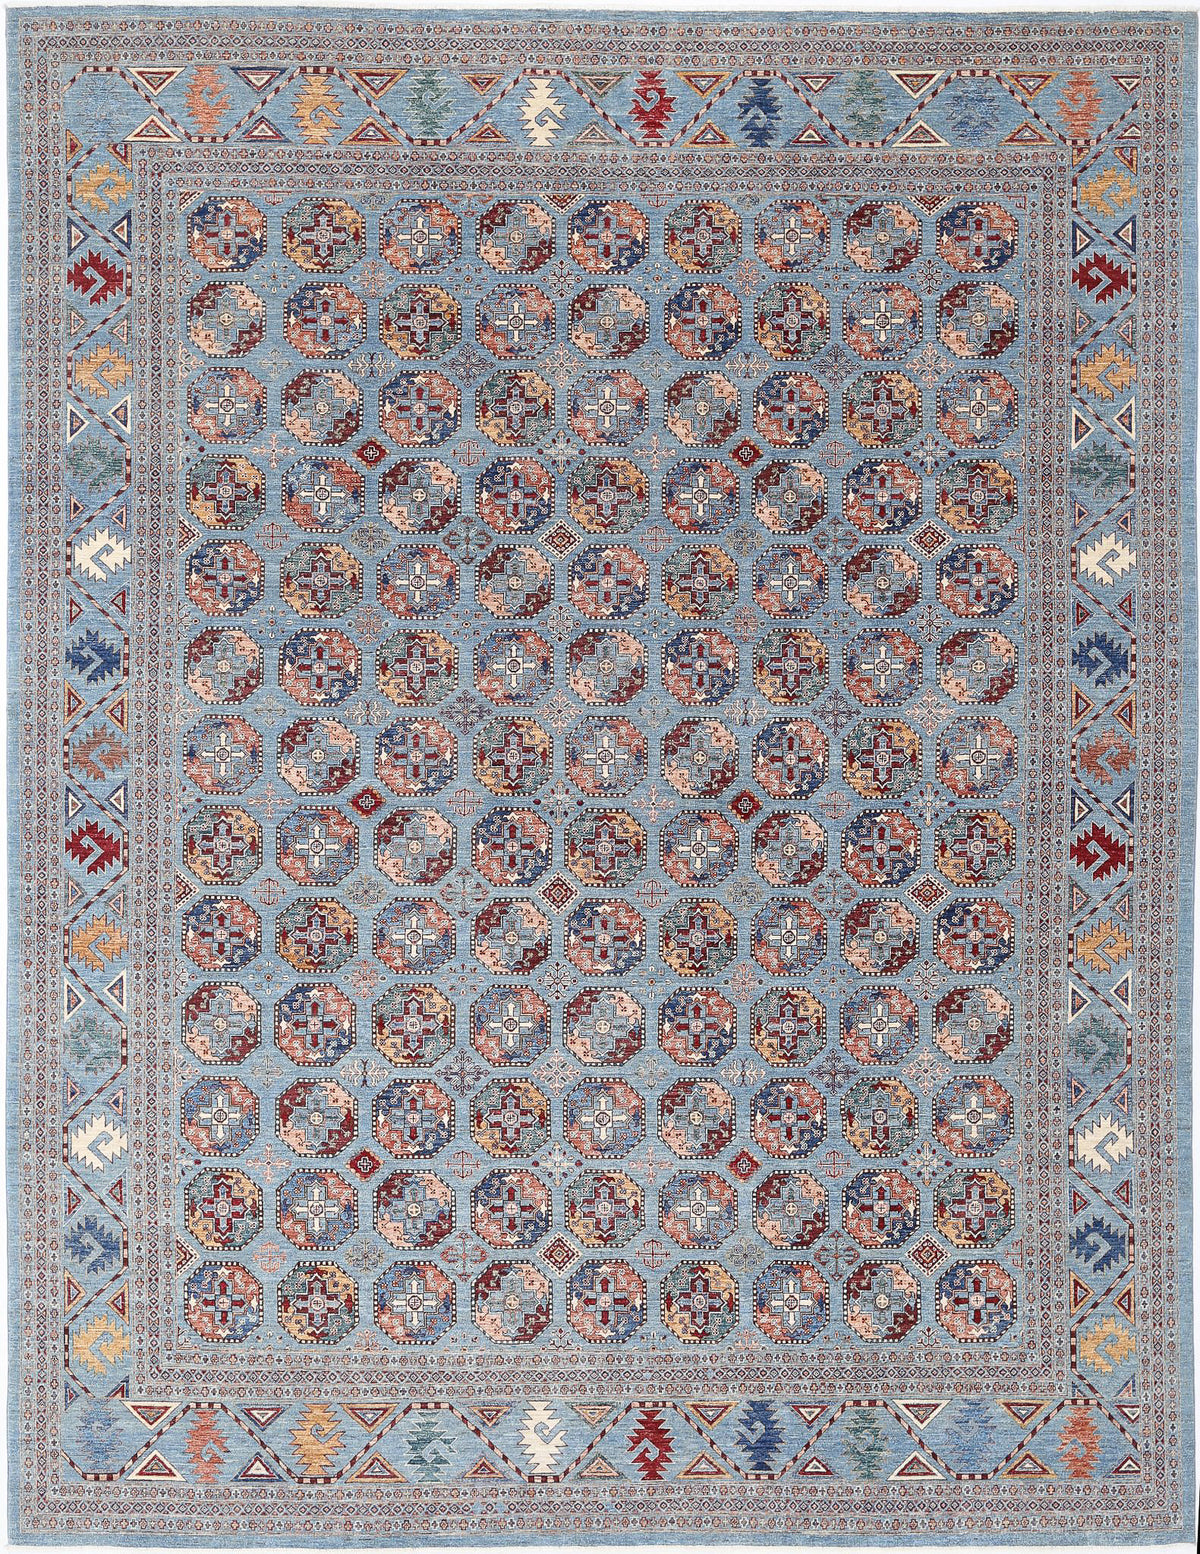 Jasmine-hand-knotted-sultani-wool-rug-5024941.jpg